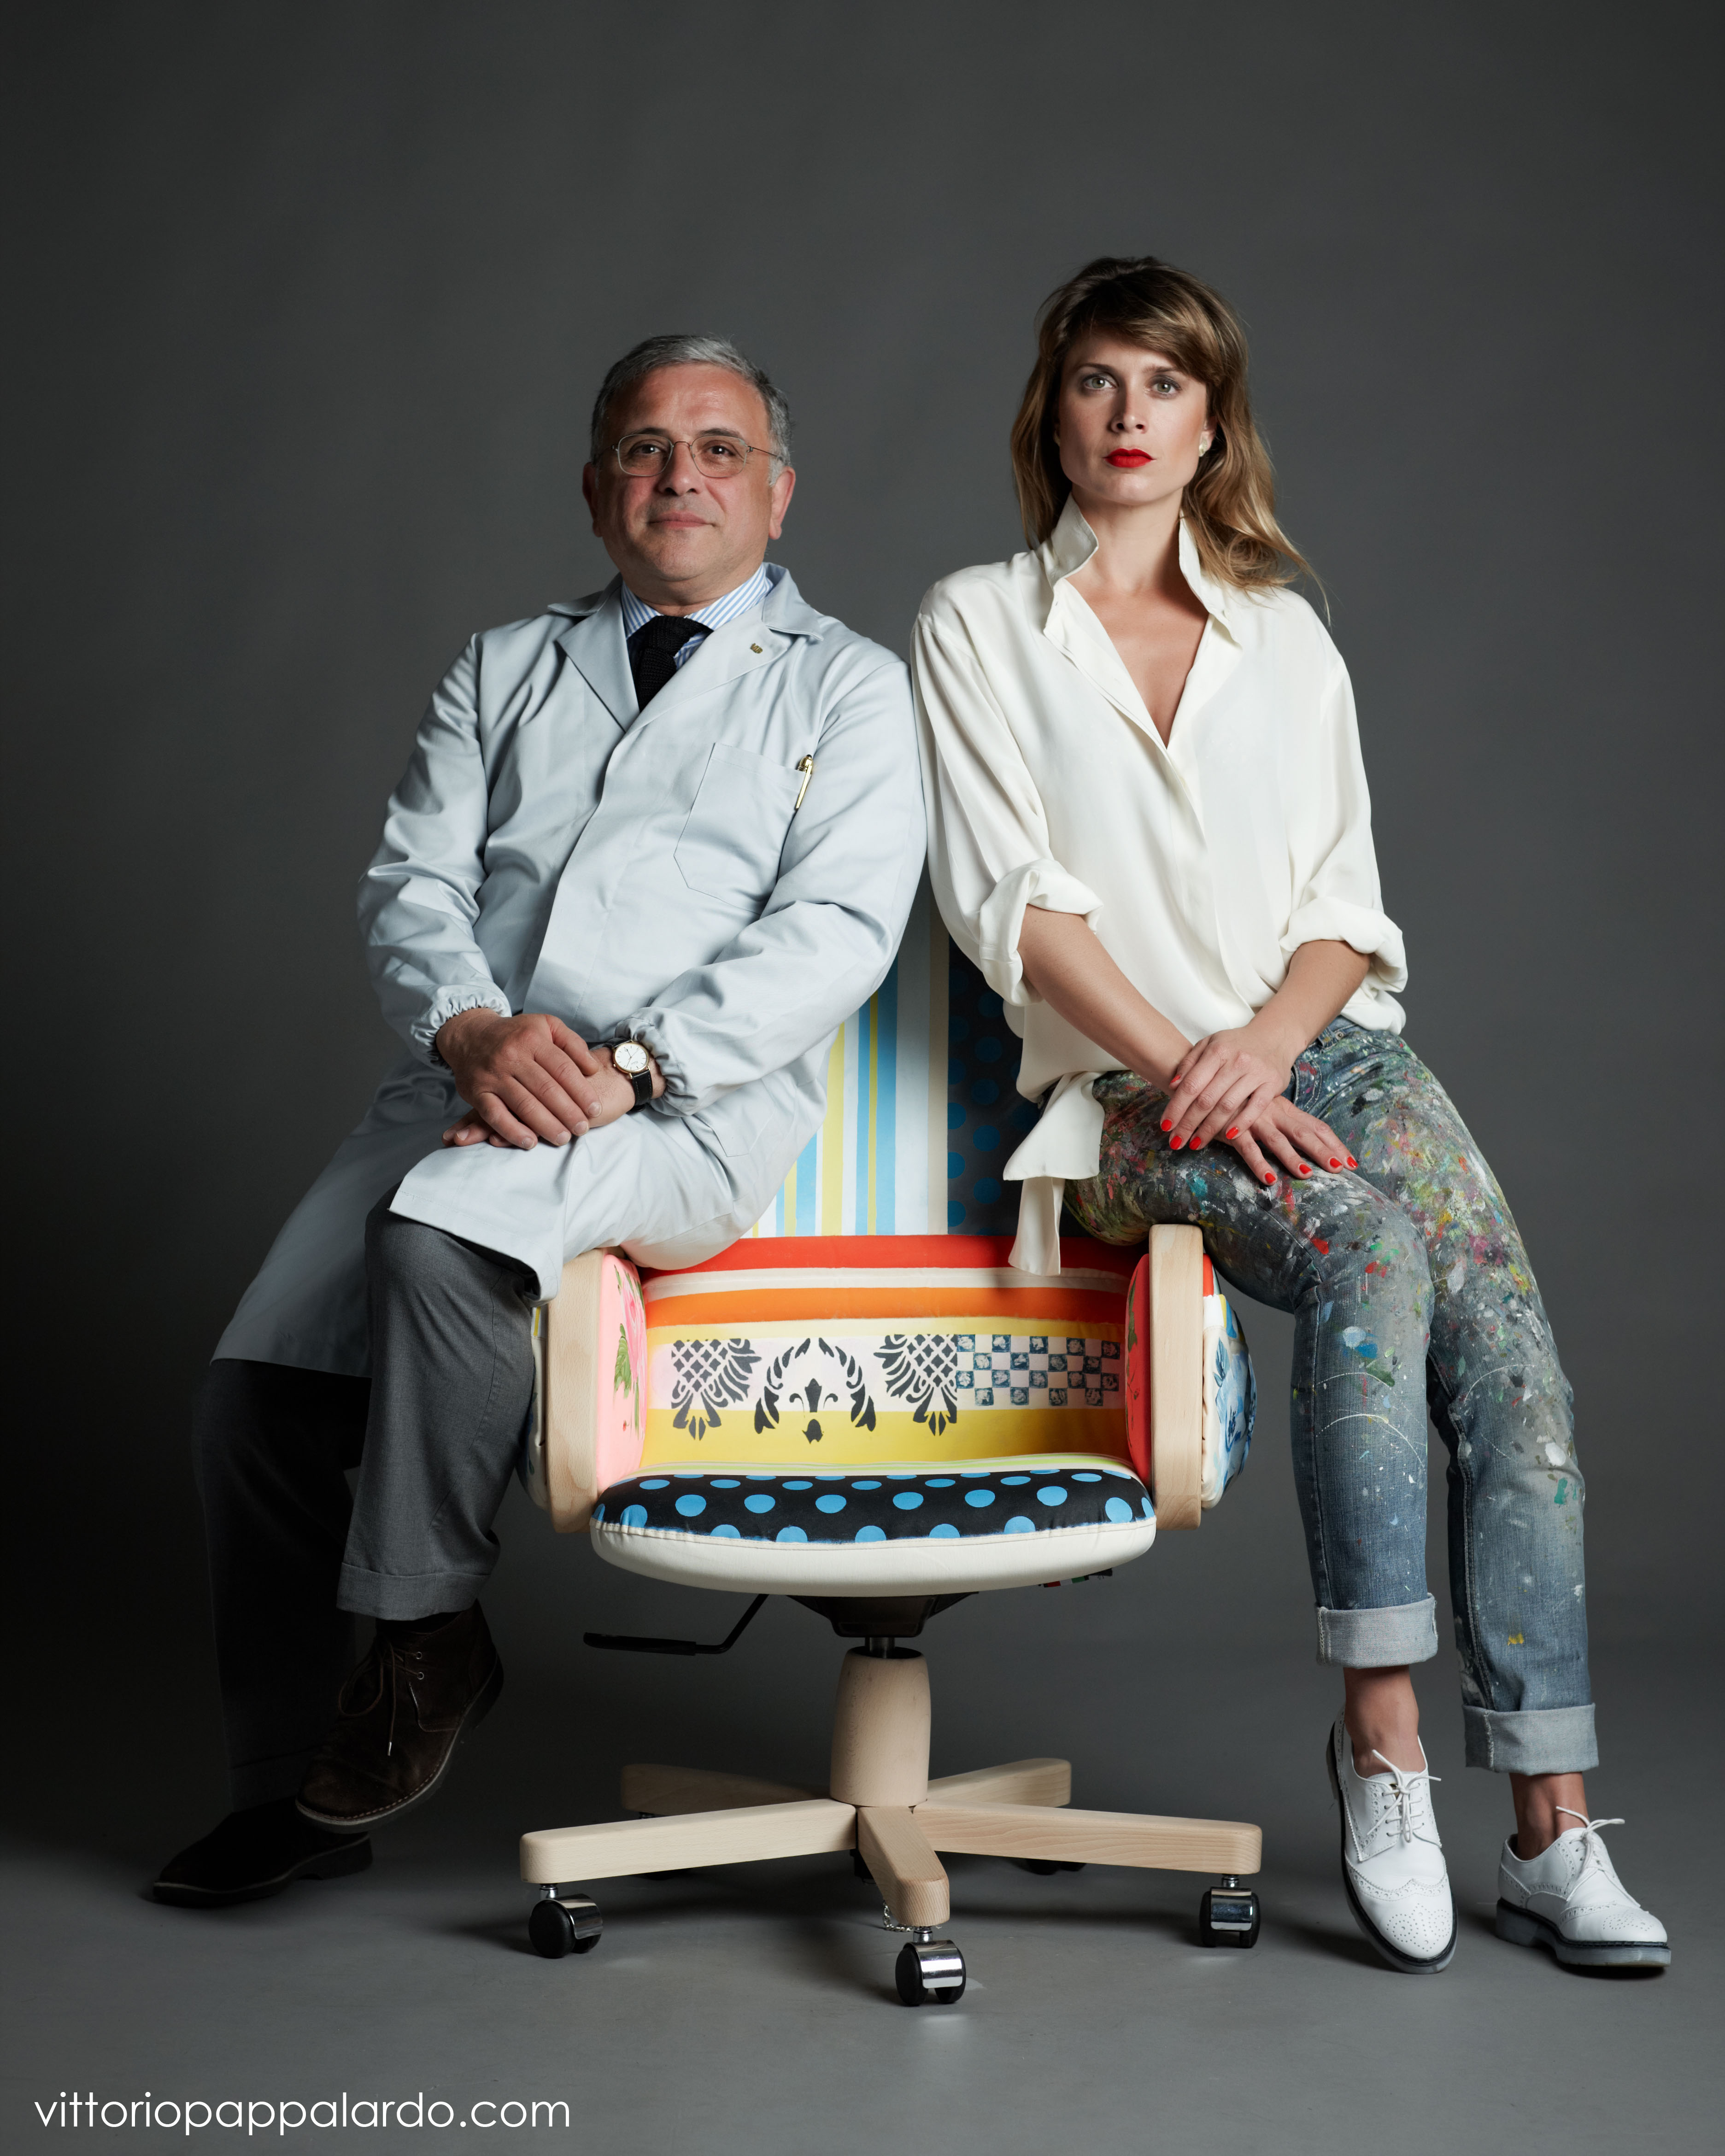  Le “poltrona d’artista” di Vittorio Pappalardo con Sarah Van Hoe in mostra a Napoli nelle sedi di Banca Promos